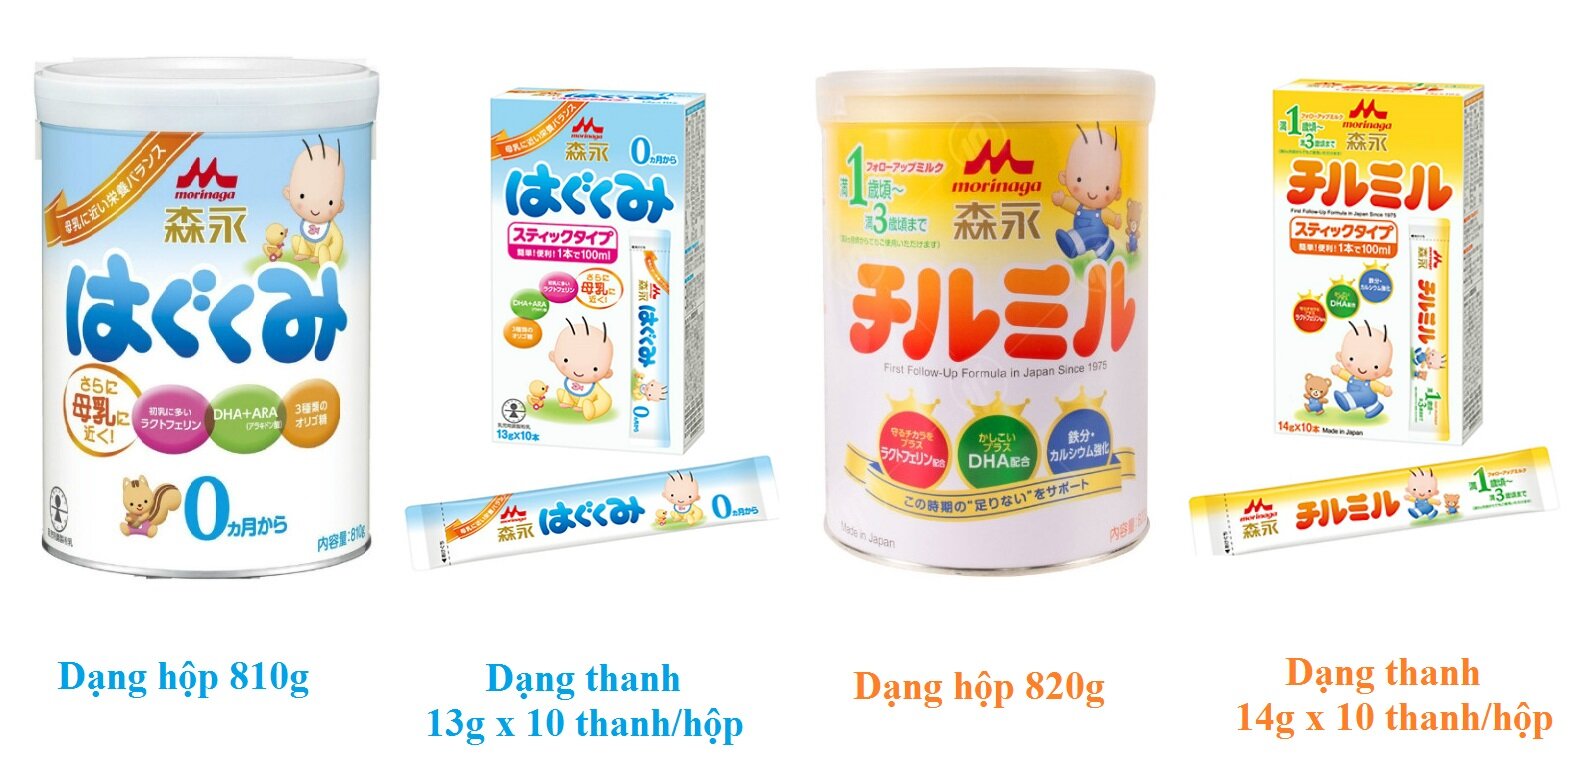 Sữa Morinaga số 9, dòng “Sữa rau” nổi tiếng của Nhật